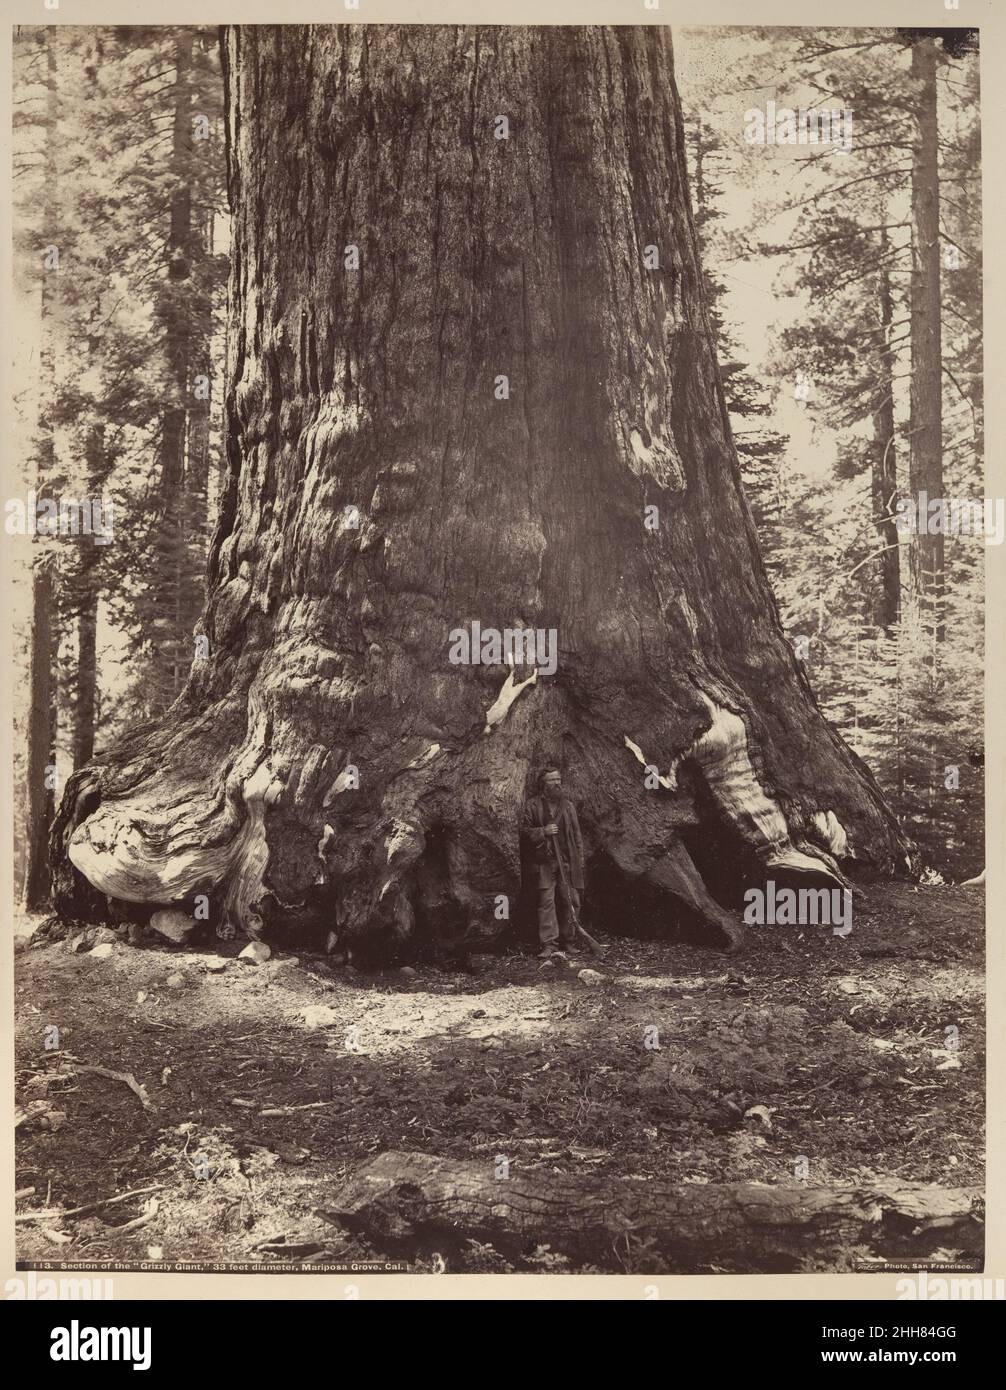 Sezione del Gigante Grizzly con Galen Clark, Mariposa Grove, Yosemite 1865–66, stampato ca. 1876 Carleton E. Watkins American Watkins ha fatto il suo nome con le viste della valle straordinariamente bella di Yosemite, che ha fotografato ripetutamente durante un periodo di venti anni, a partire dal 1861. A quel tempo era un virtuoso praticante del difficile processo di wet-collodion utilizzando lastre di vetro 'mammoth', che rendevano la vastità del paesaggio e i suoi infiniti dettagli con portata e chiarezza insuperabili. Watkins, il cui sostentamento dipendeva dalle vendite dei suoi punti di vista della California ai turisti, no Foto Stock